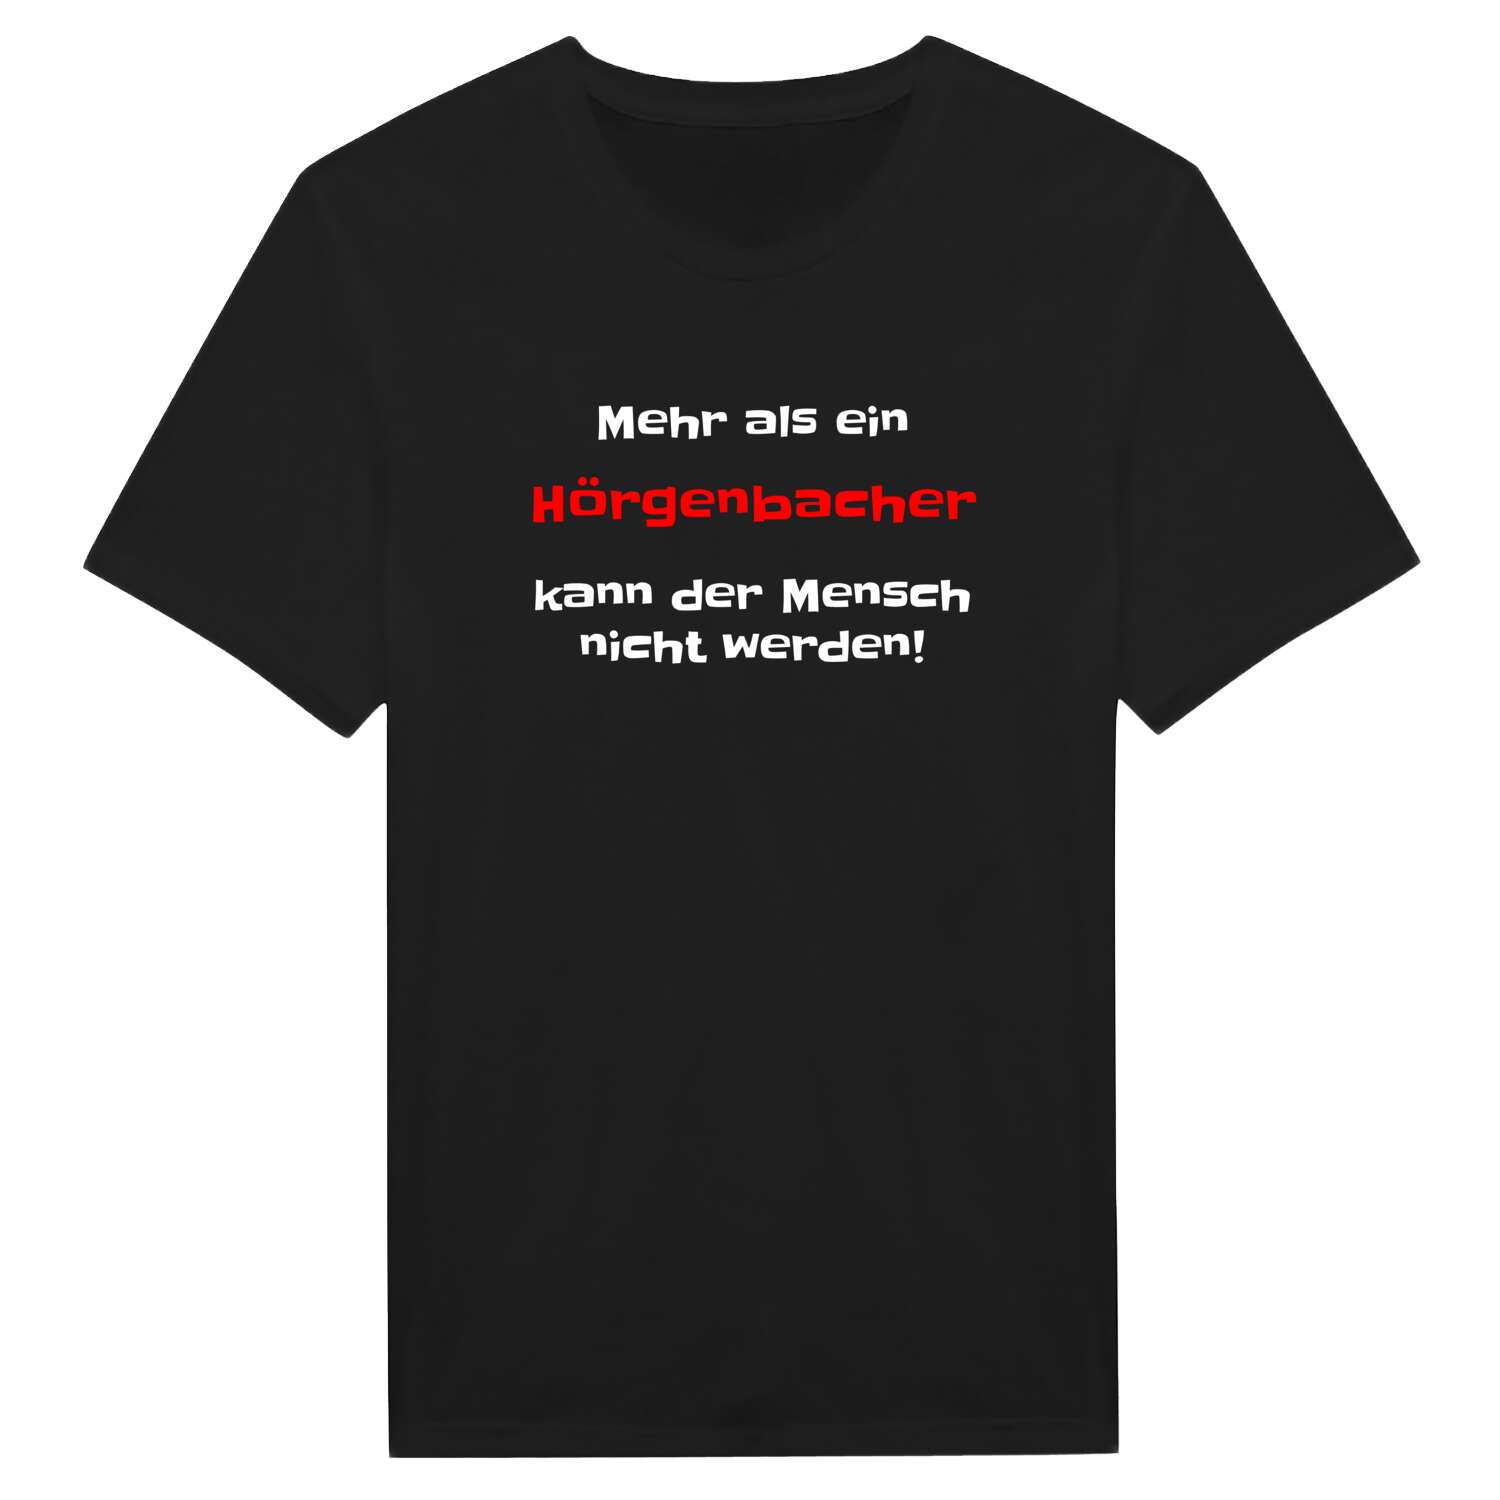 Hörgenbach T-Shirt »Mehr als ein«